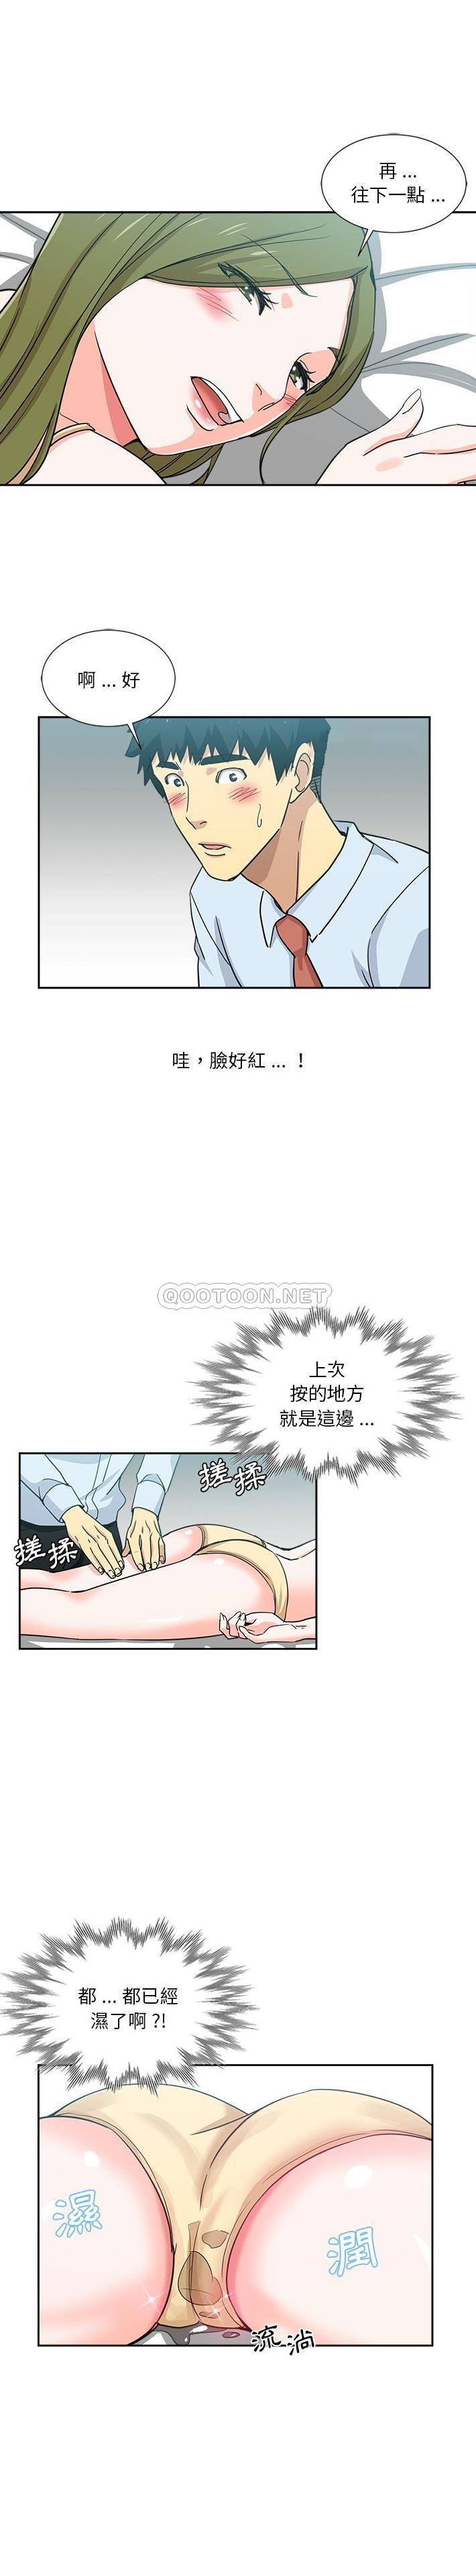 危险纯友谊  第13话 漫画图片1.jpg